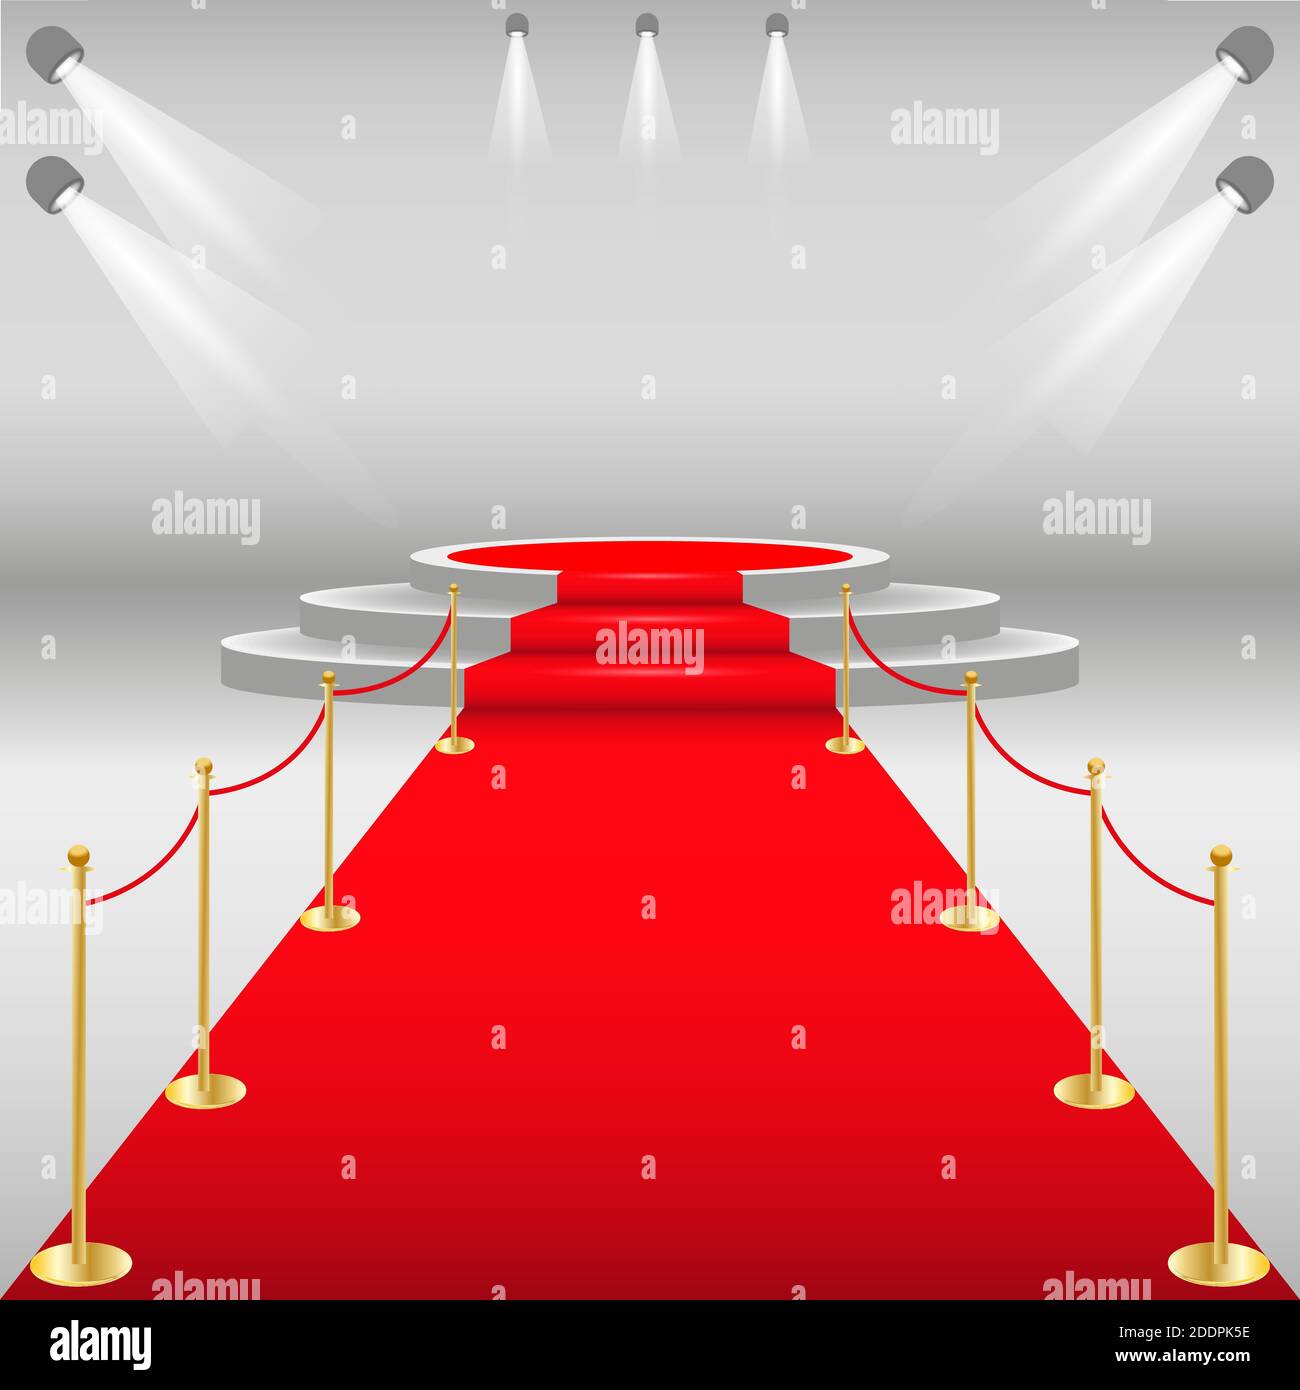 Roter Teppich und Laufsteg mit Seilbarriere. Weißer runder Sockel mit roter Spur. Bühnenpodium mit Beleuchtung, Szenario der Preisverleihung. Vektor-Abb. Stock Vektor